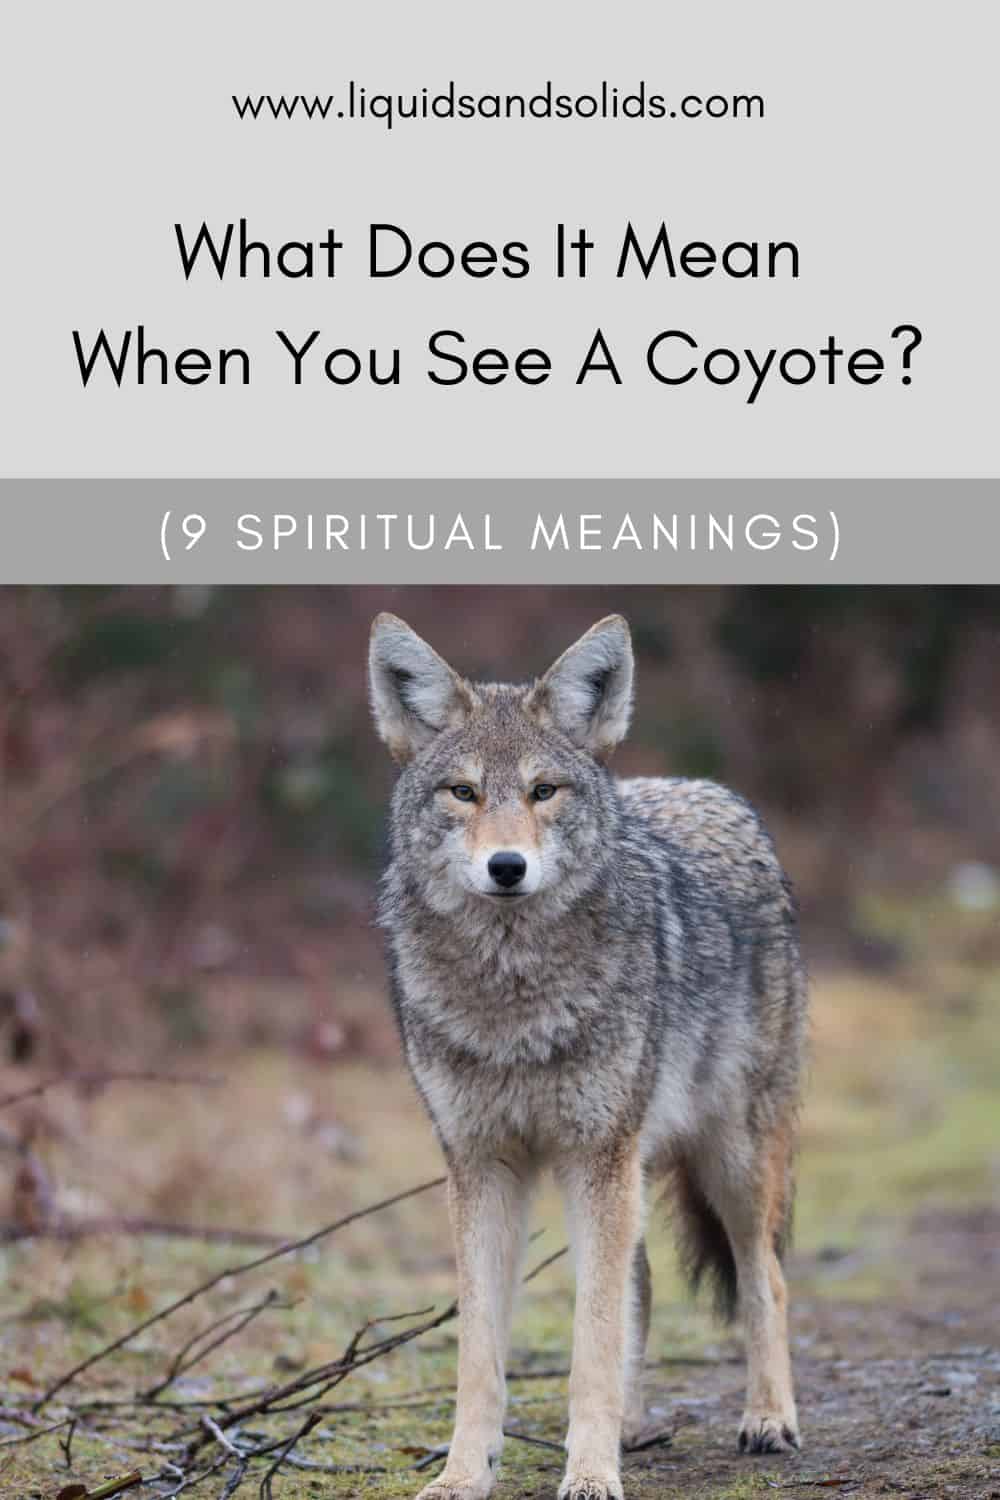  ມັນຫມາຍຄວາມວ່າແນວໃດເມື່ອທ່ານເຫັນ Coyote? (9 ຄວາມ​ຫມາຍ​ທາງ​ວິນ​ຍານ​)